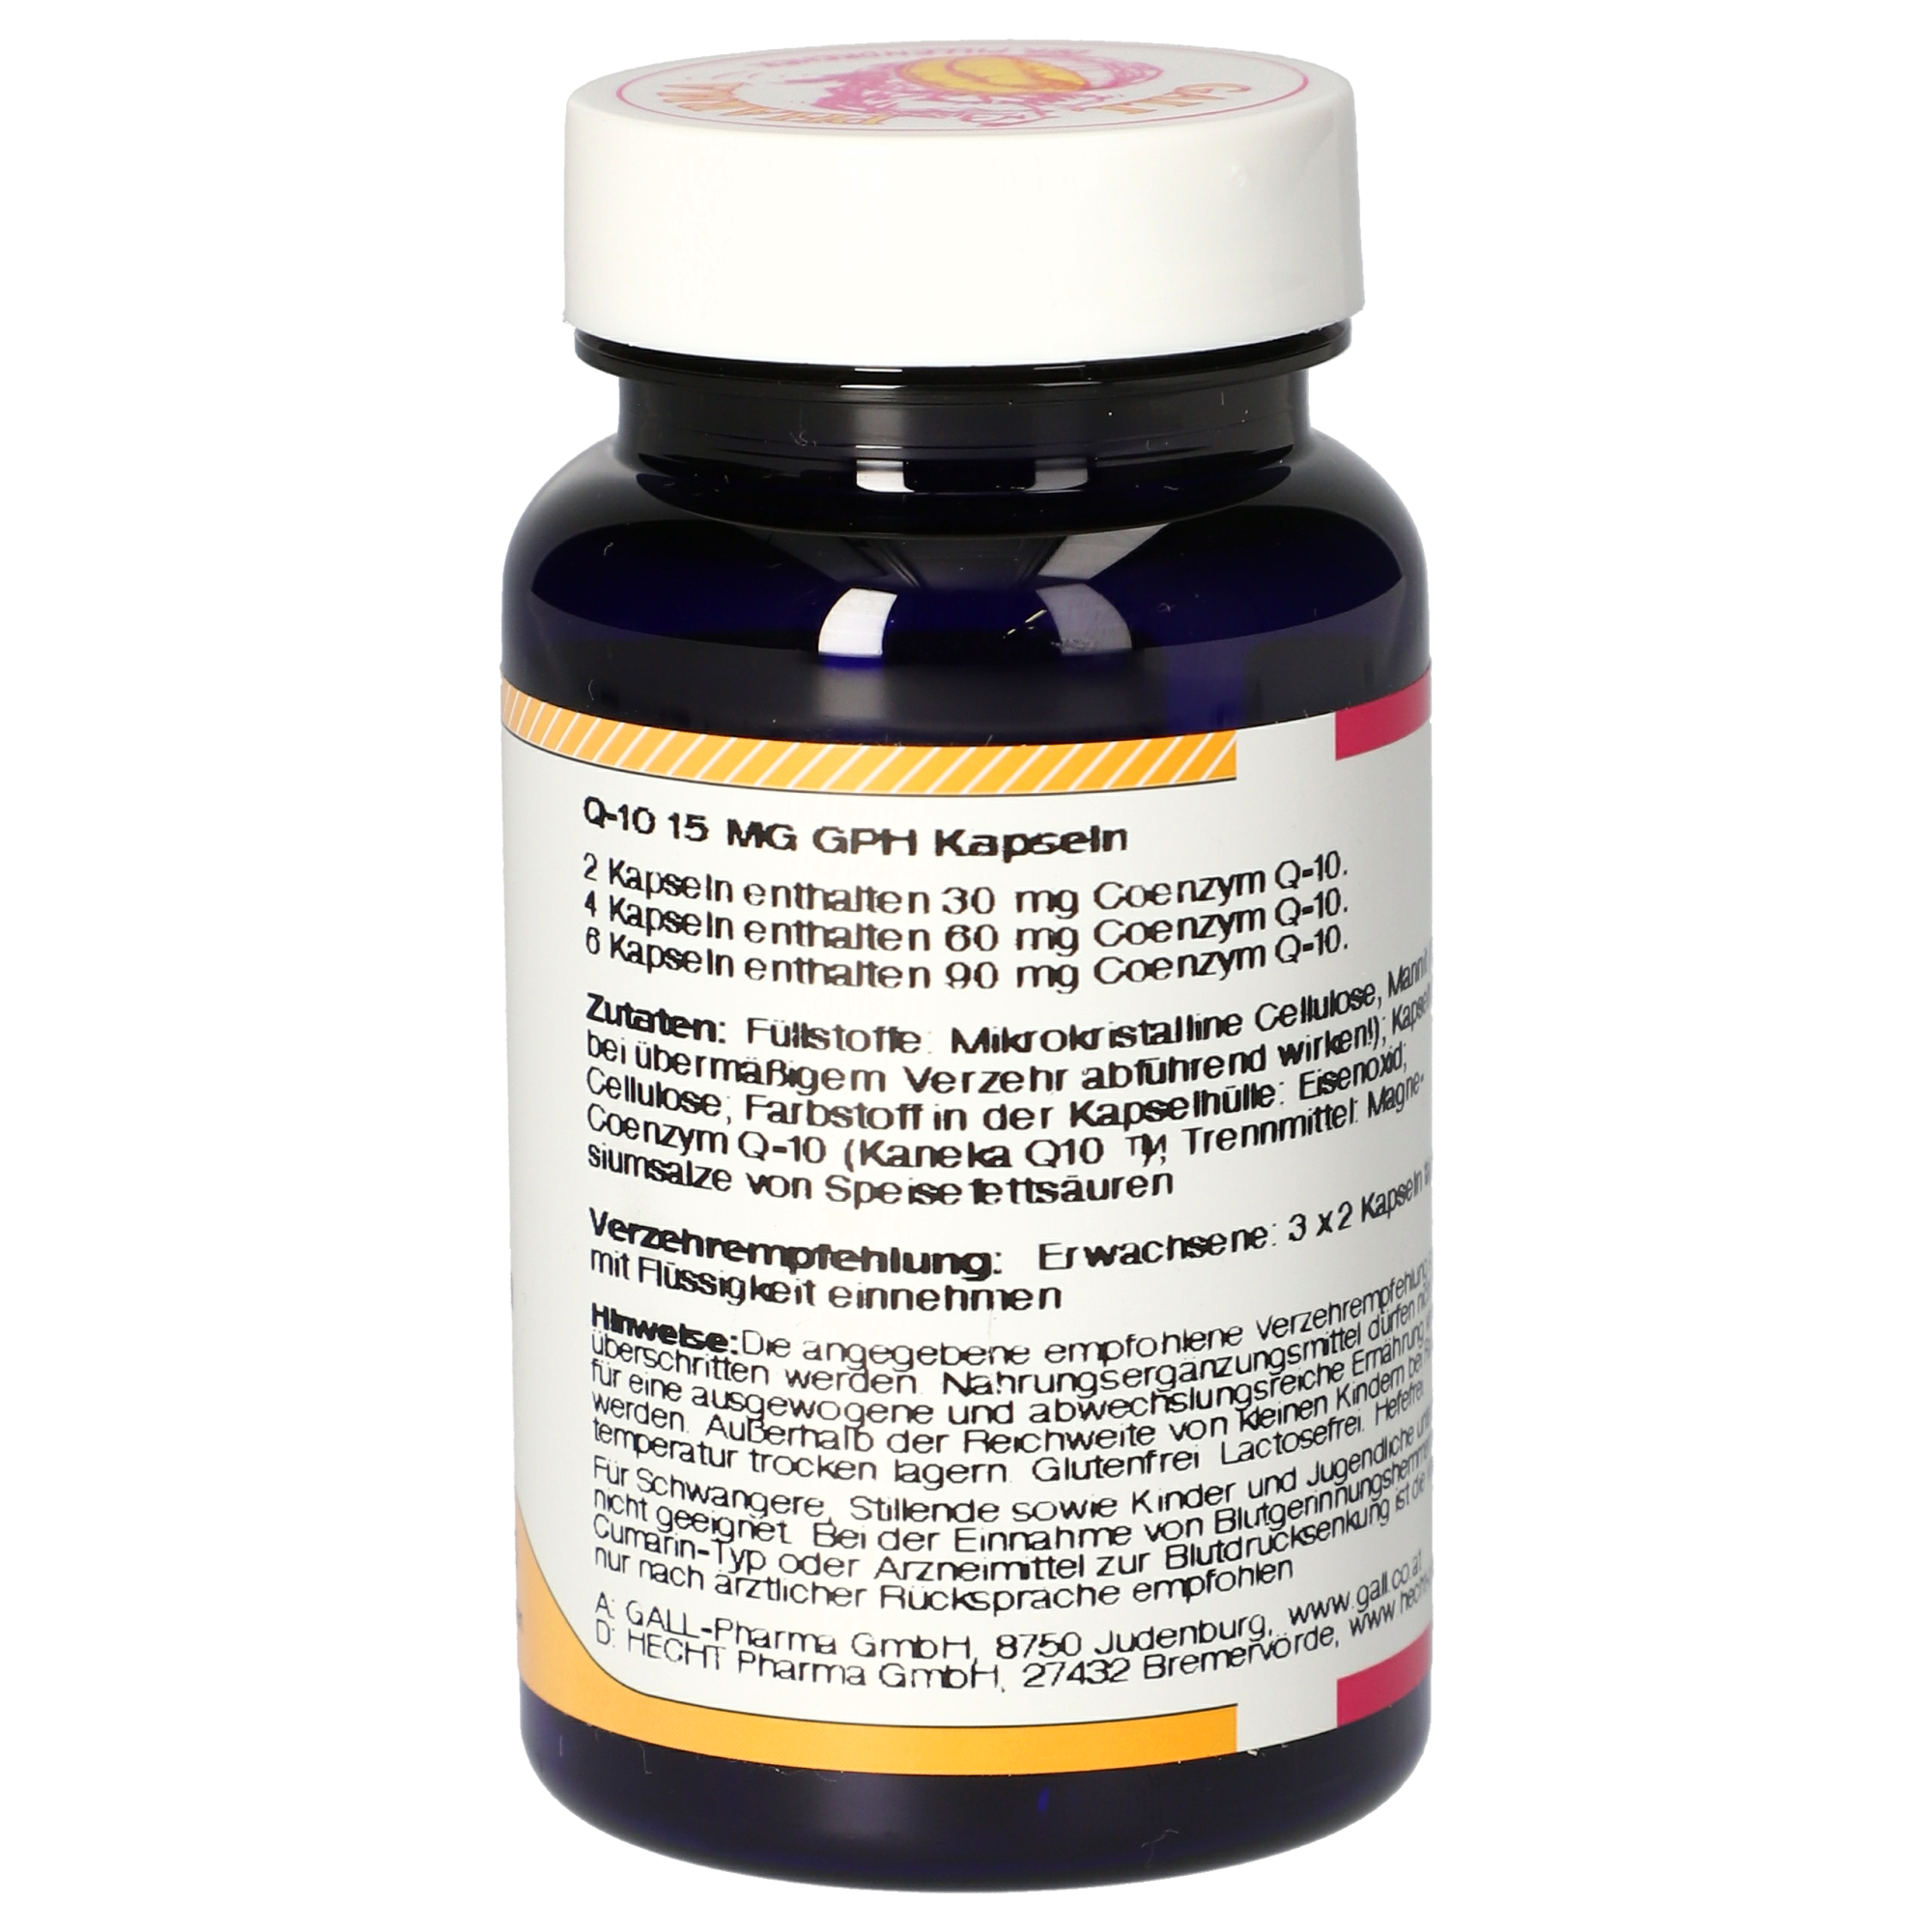 Q-10 15 mg GPH Kapseln